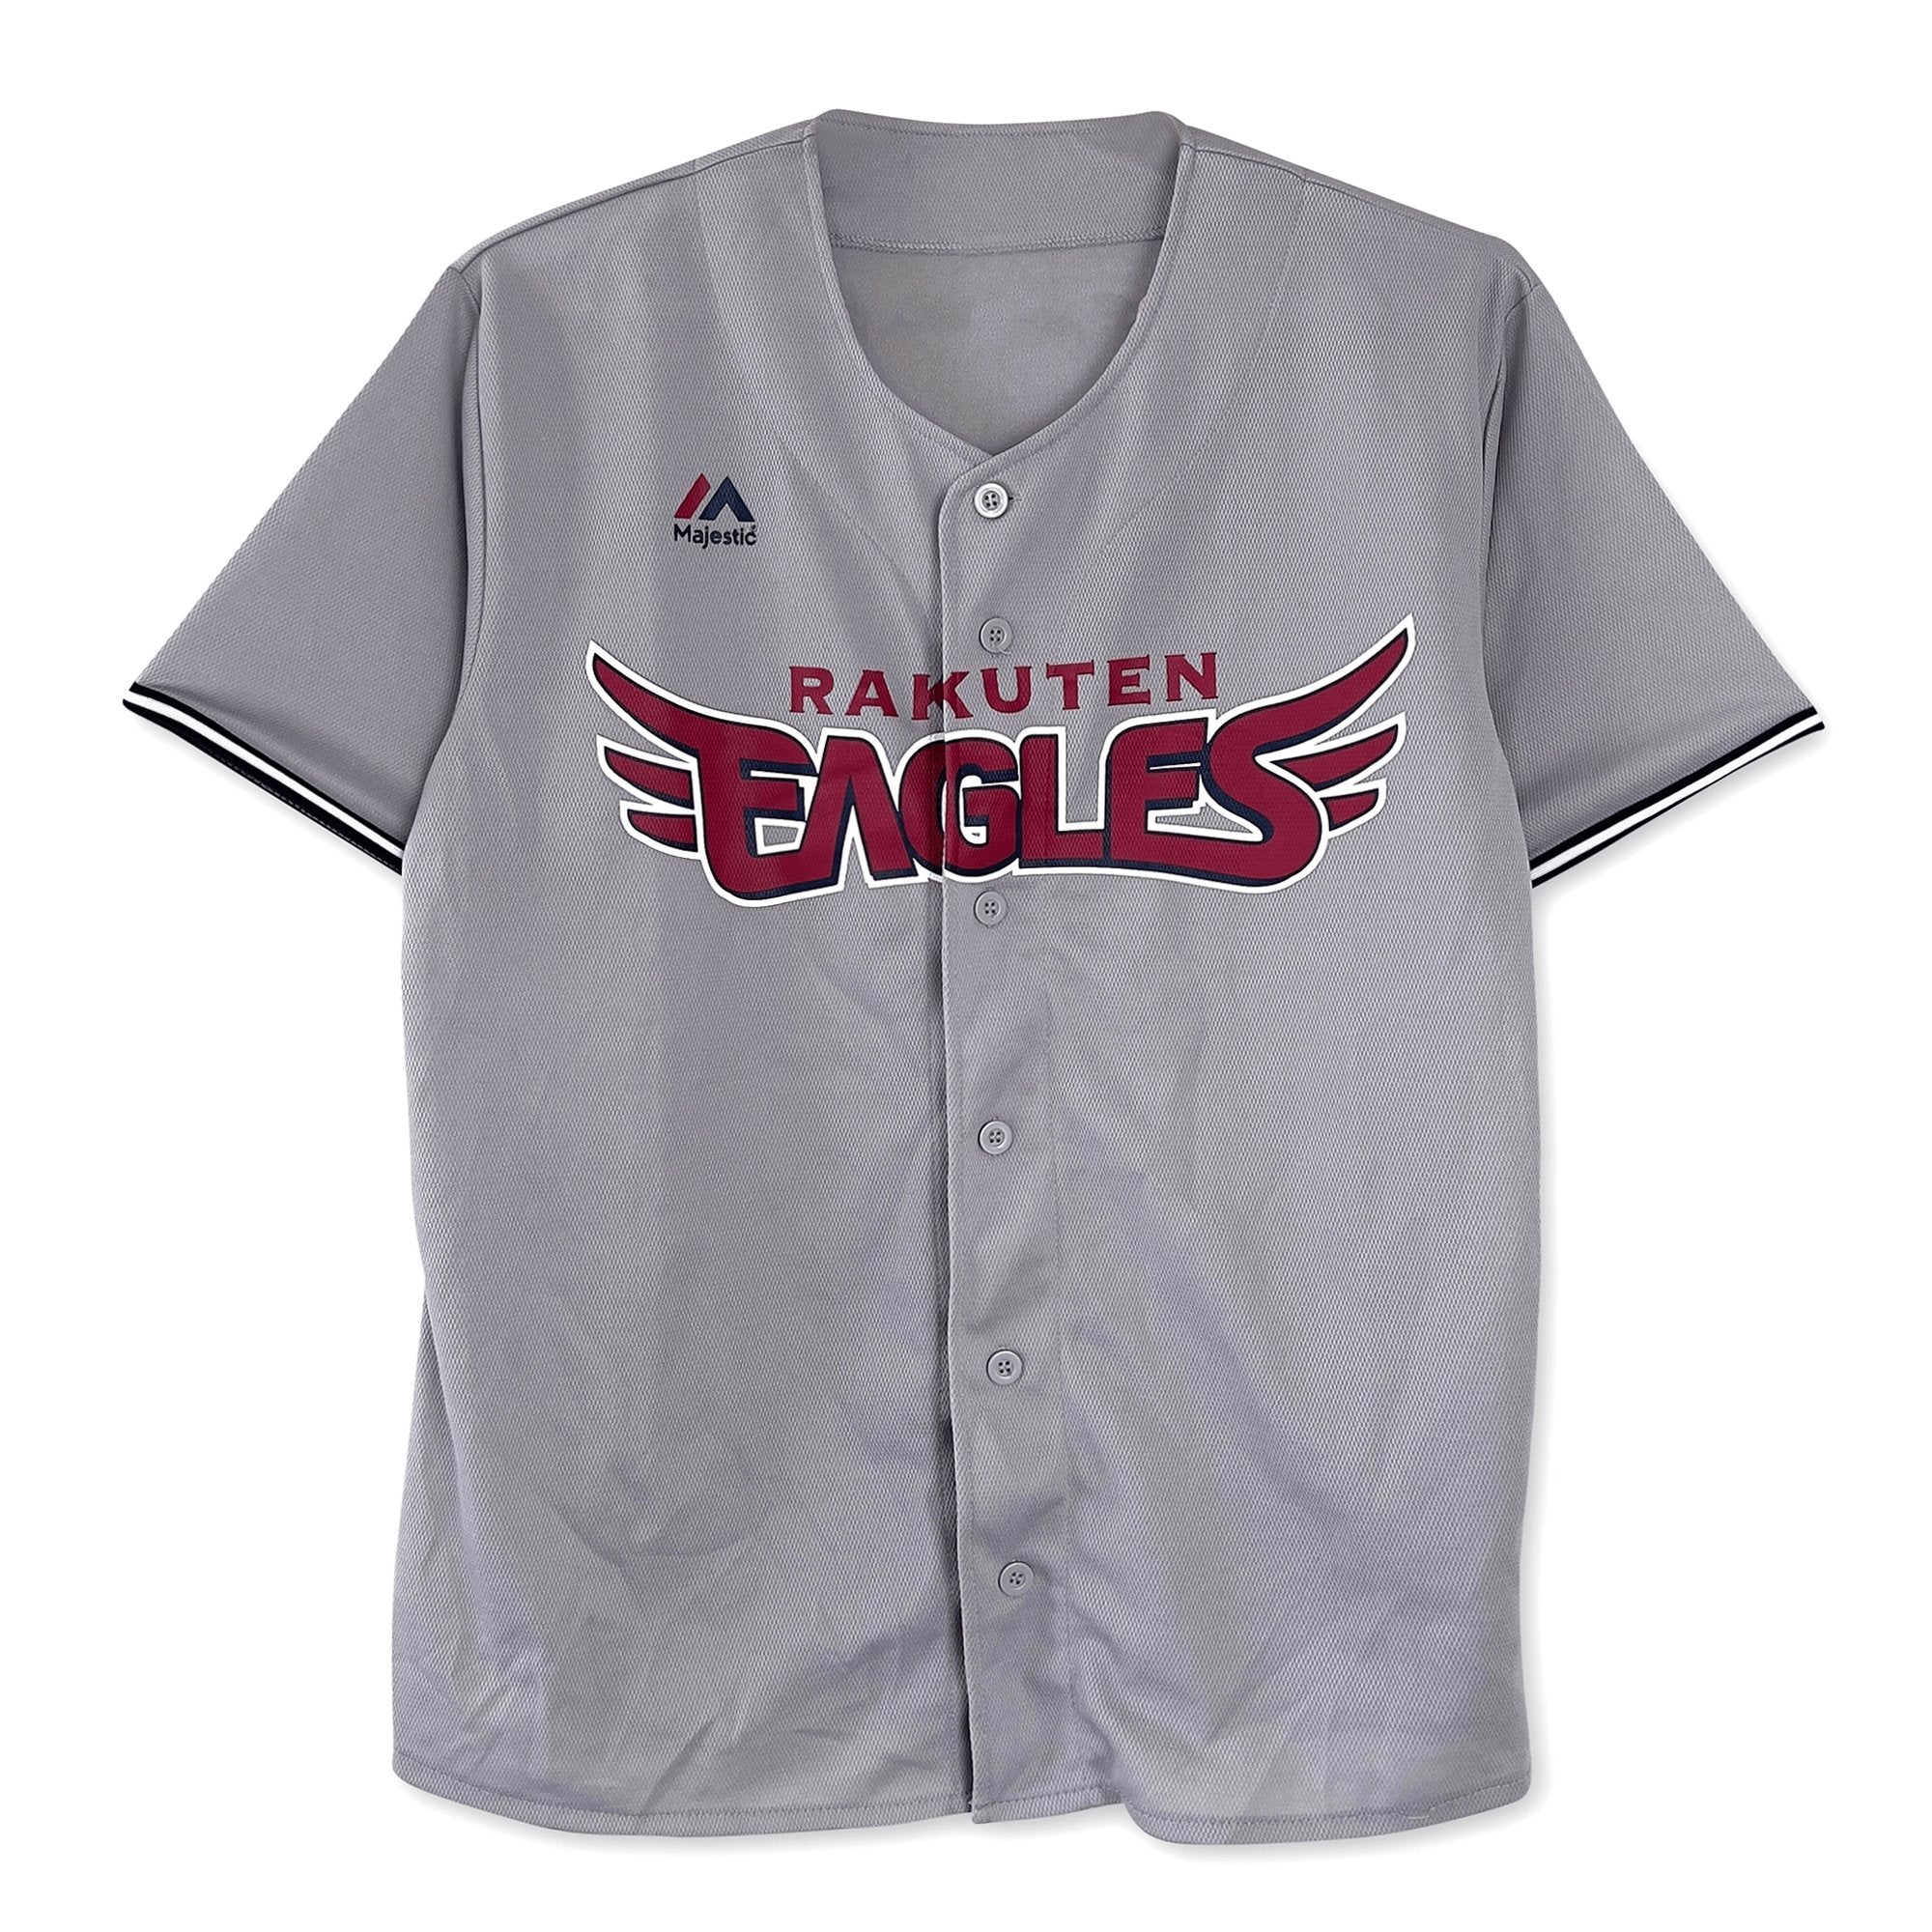 Japan NPB Baseball Majestic Tohoku Rakuten Eagles 2021 Jersey Grey